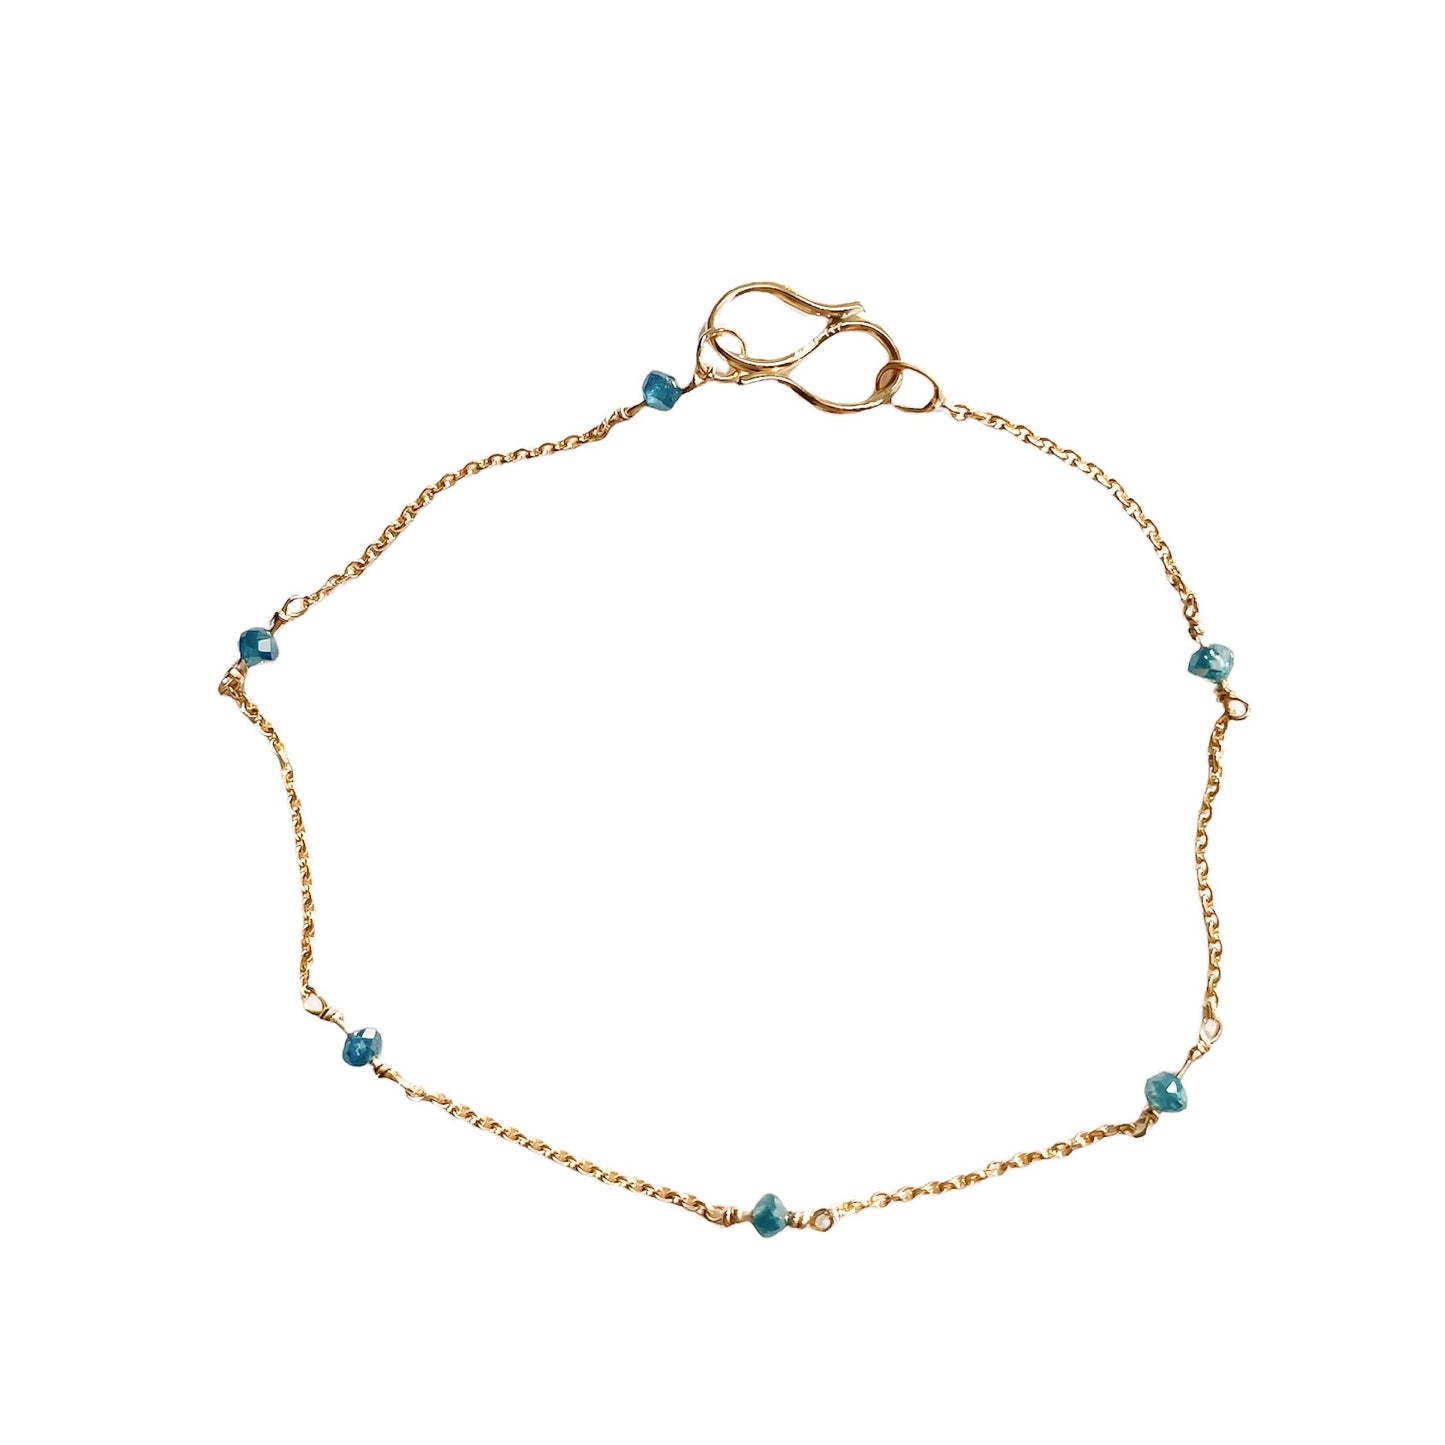 Beads 14 kt gold green diamond bracelet